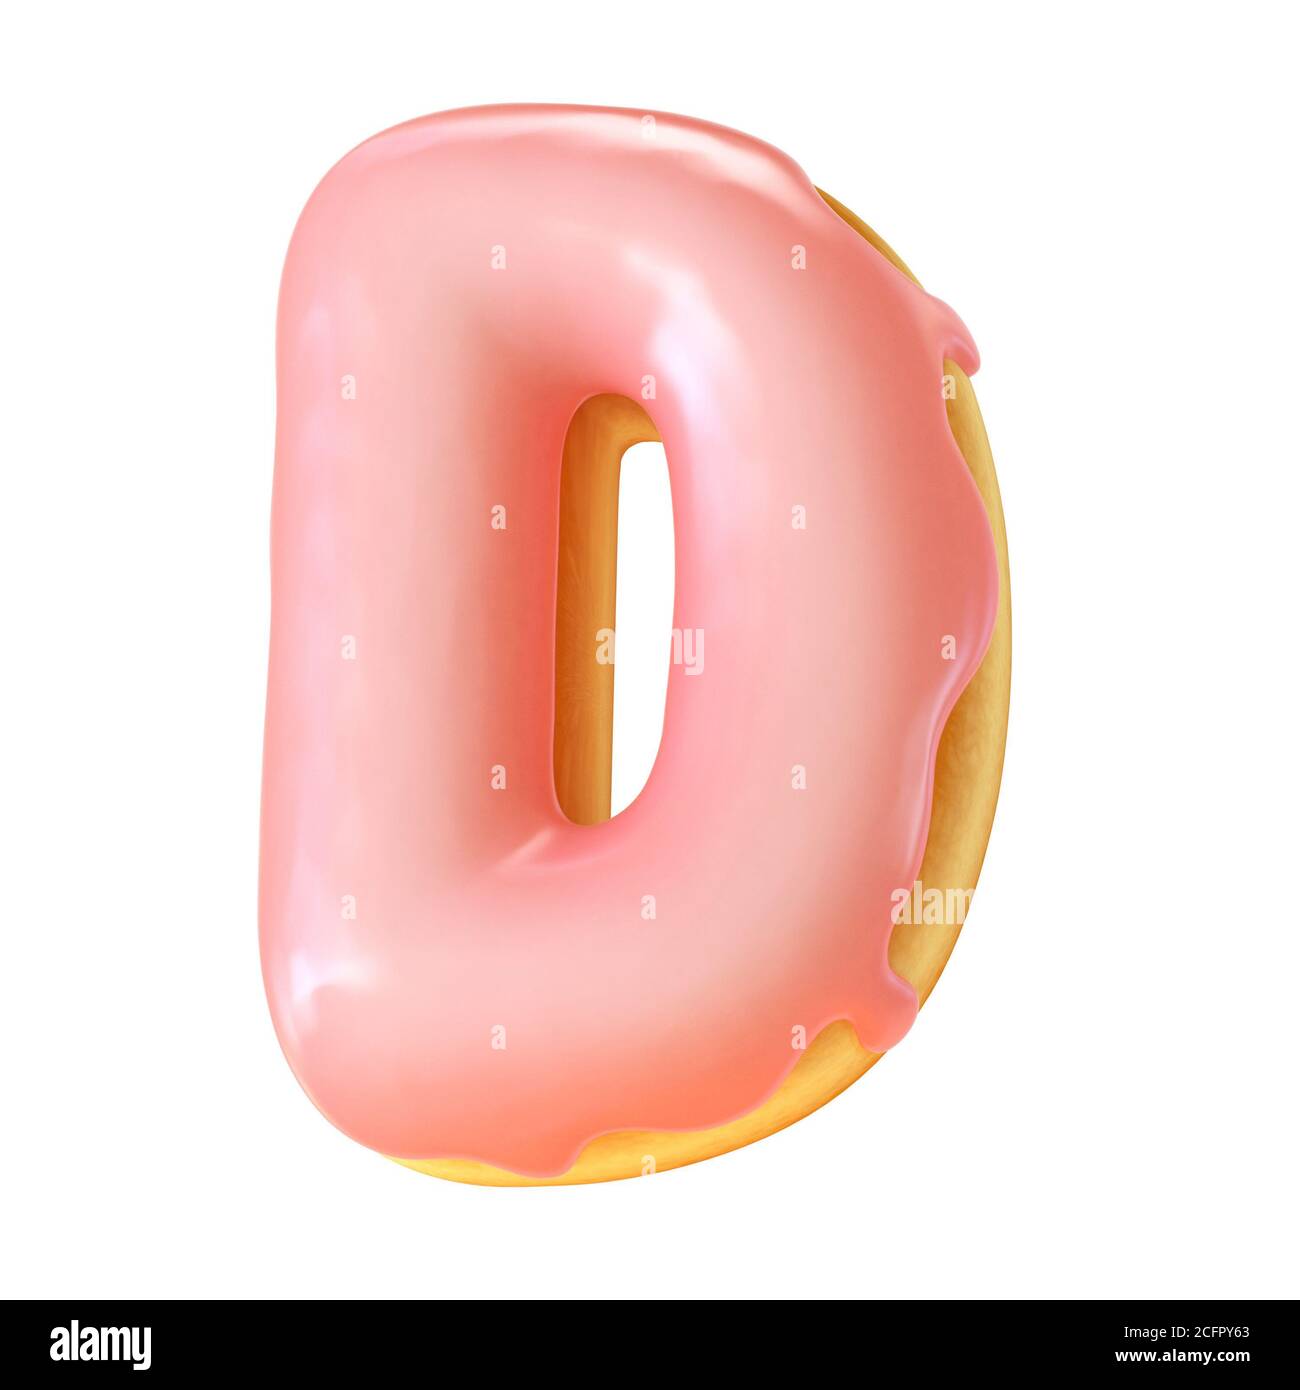 Glazed donut font 3d rendering letter D Stock Photo - Alamy